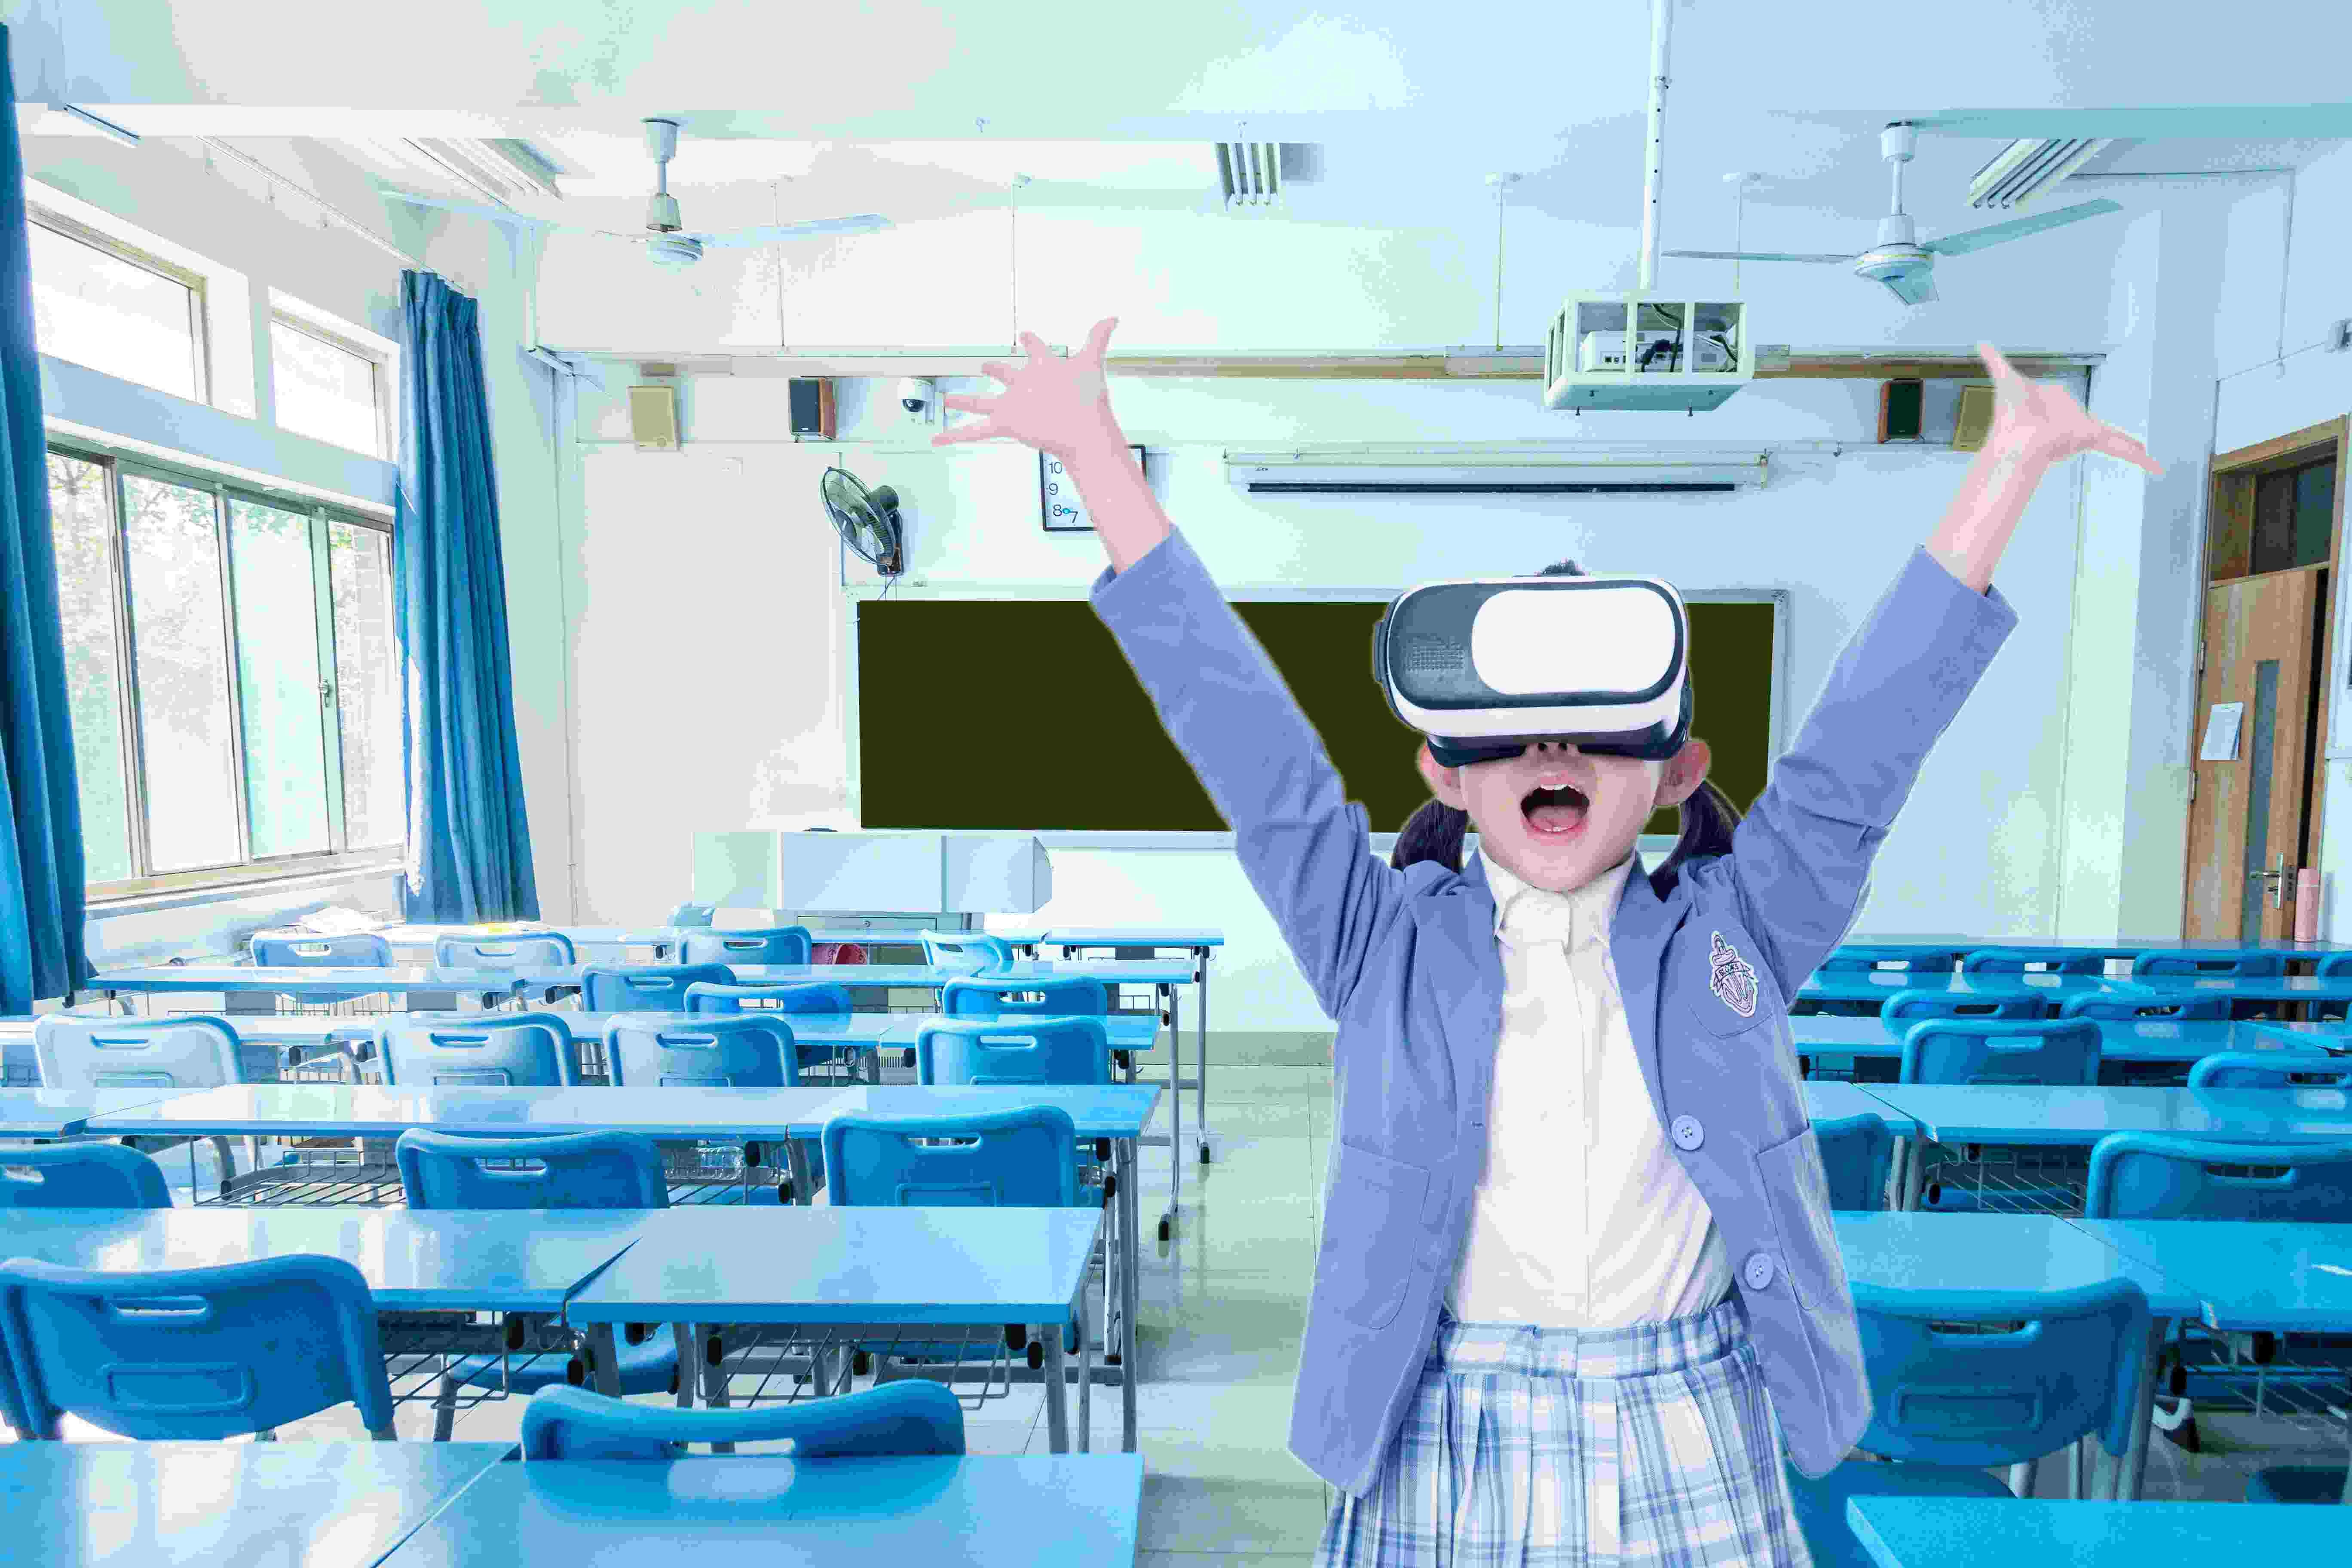 VR防拐防骗,VR拐卖儿童,VR青少年安全